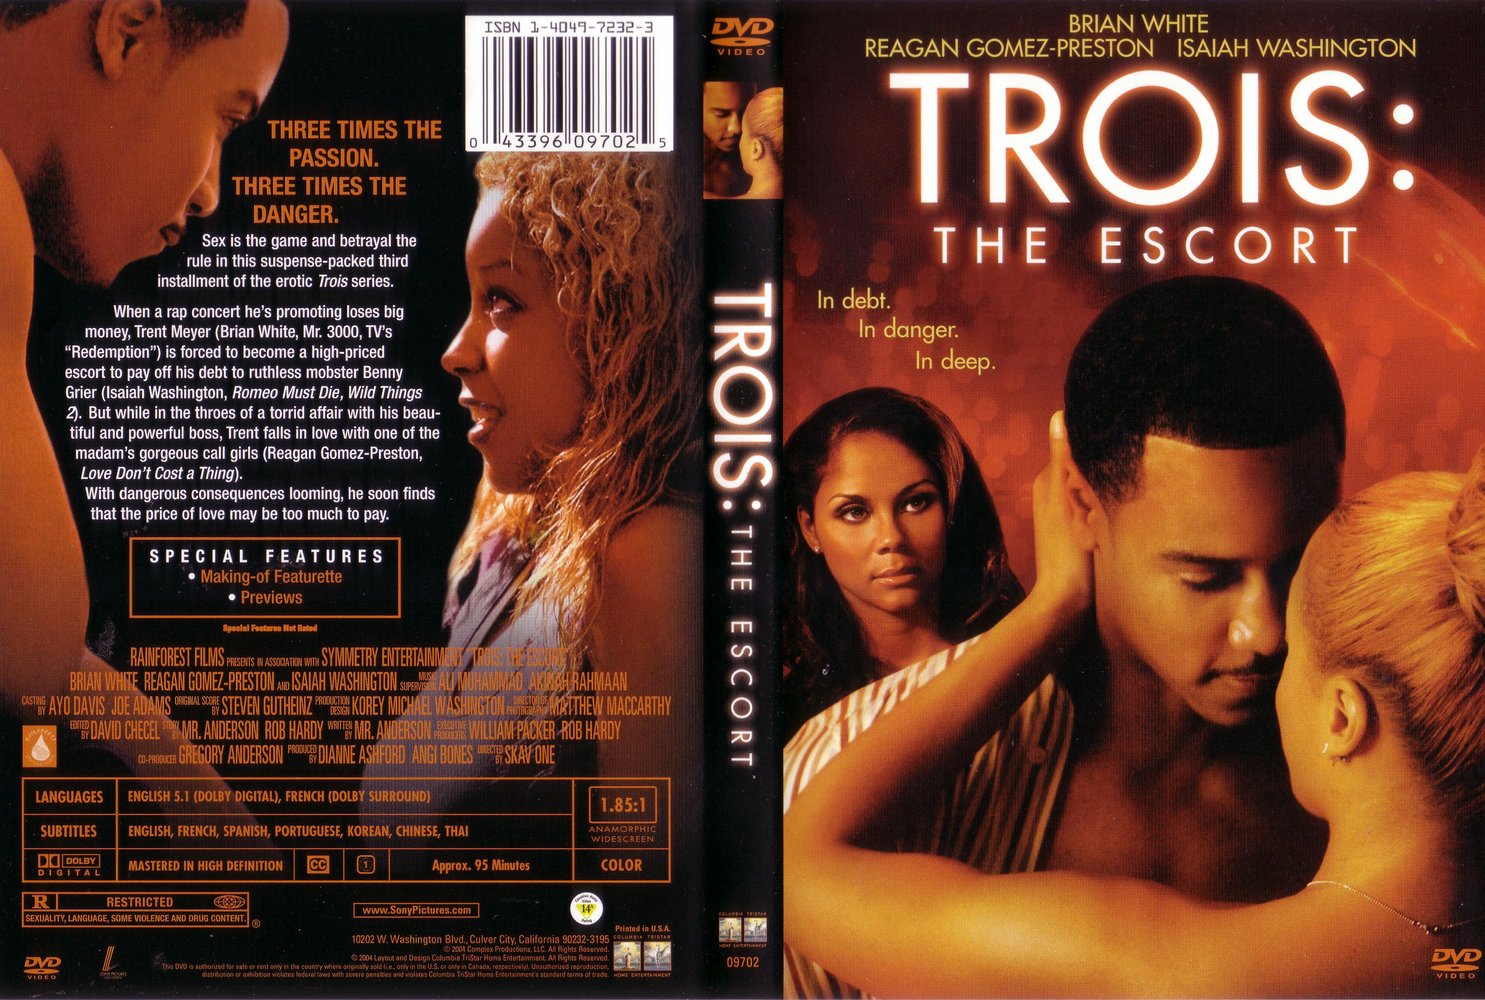 Jaquette DVD Trois - The escort